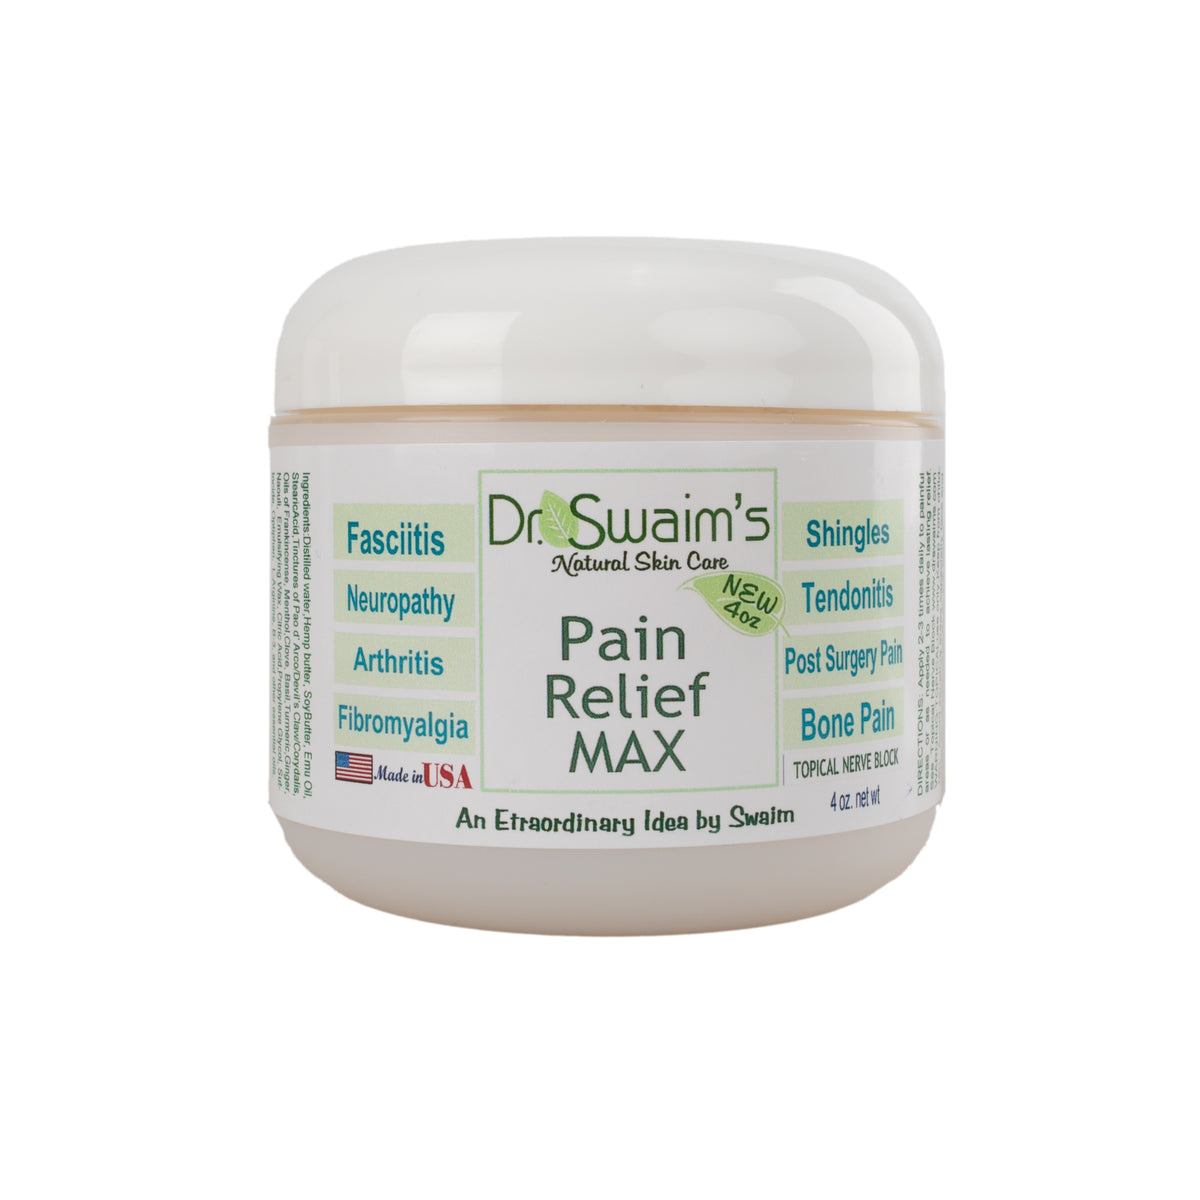 Dr. Swaim's Pain Relief Max Cream 4 oz